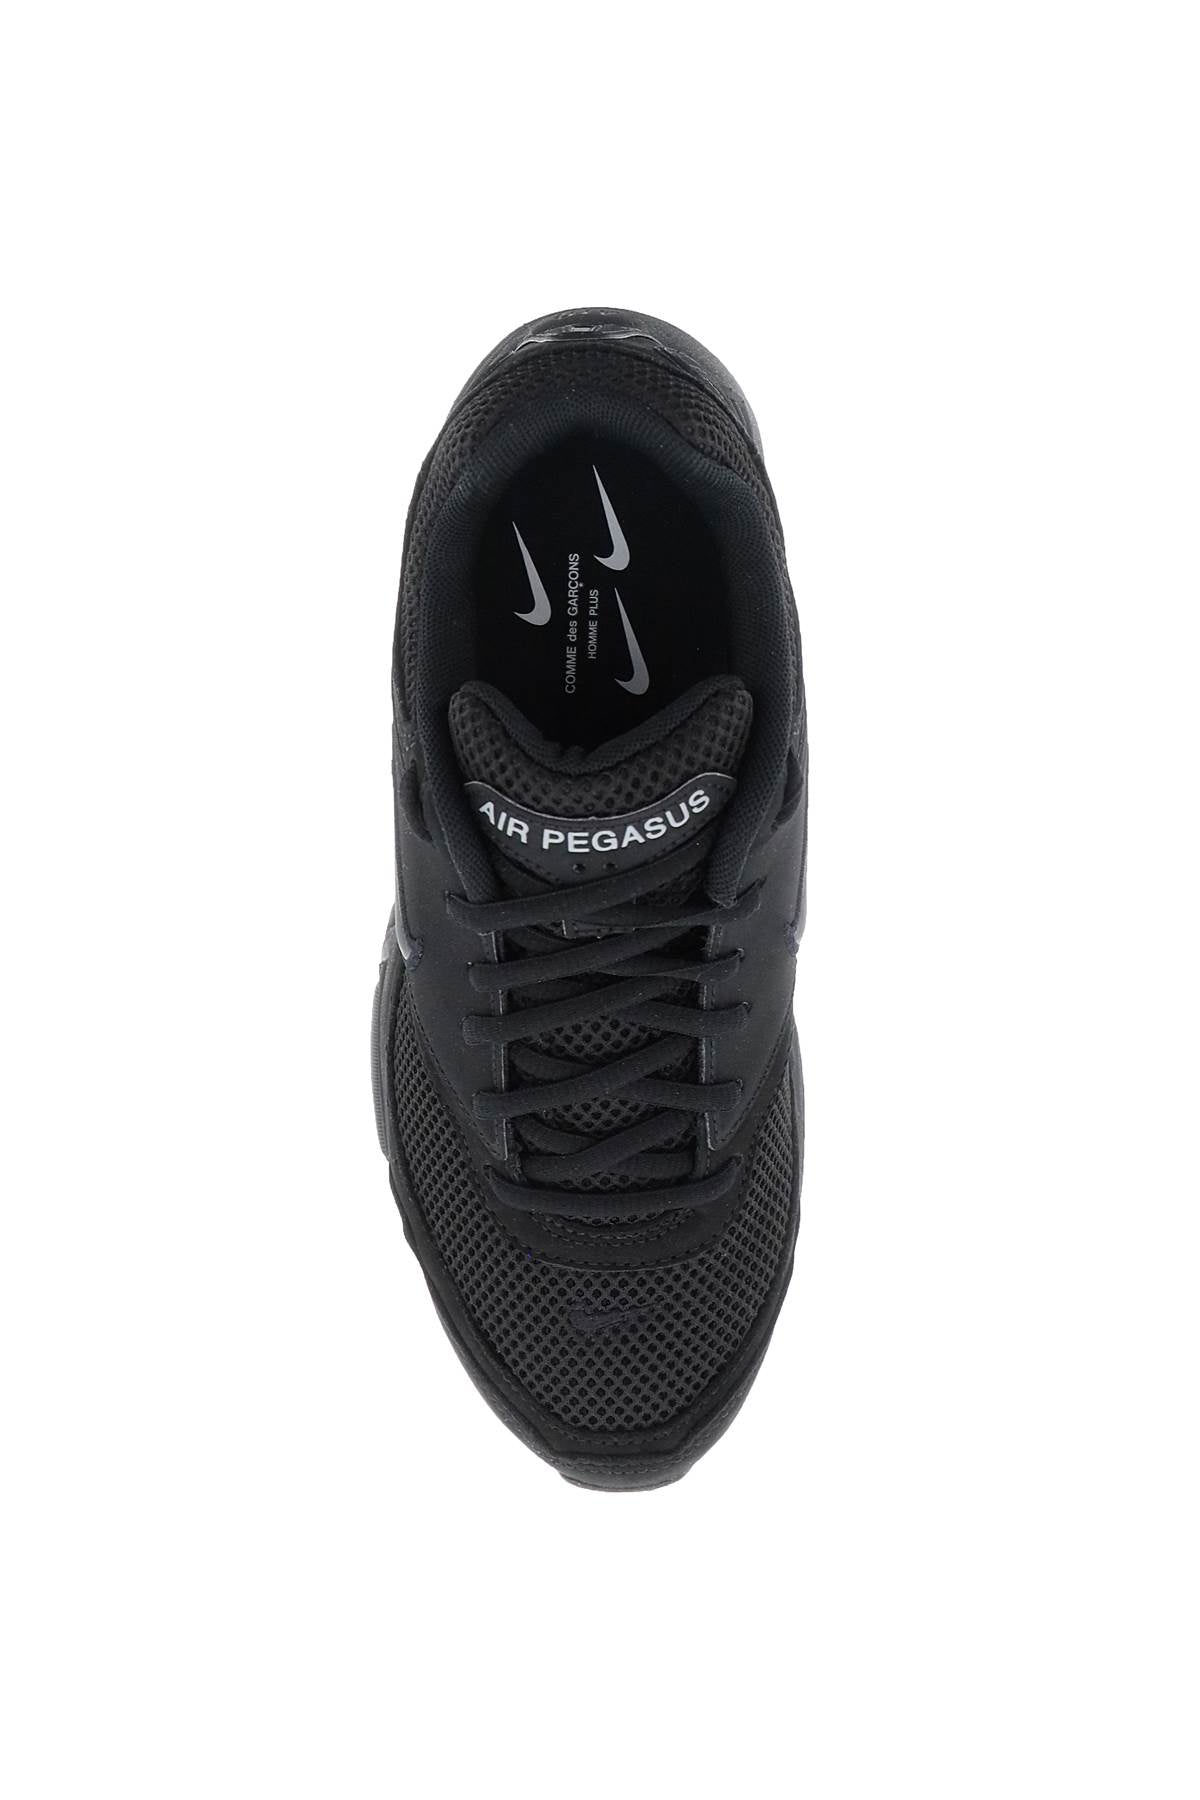 Air Pegasus 2005 Sp Sneakers X Nike - Black